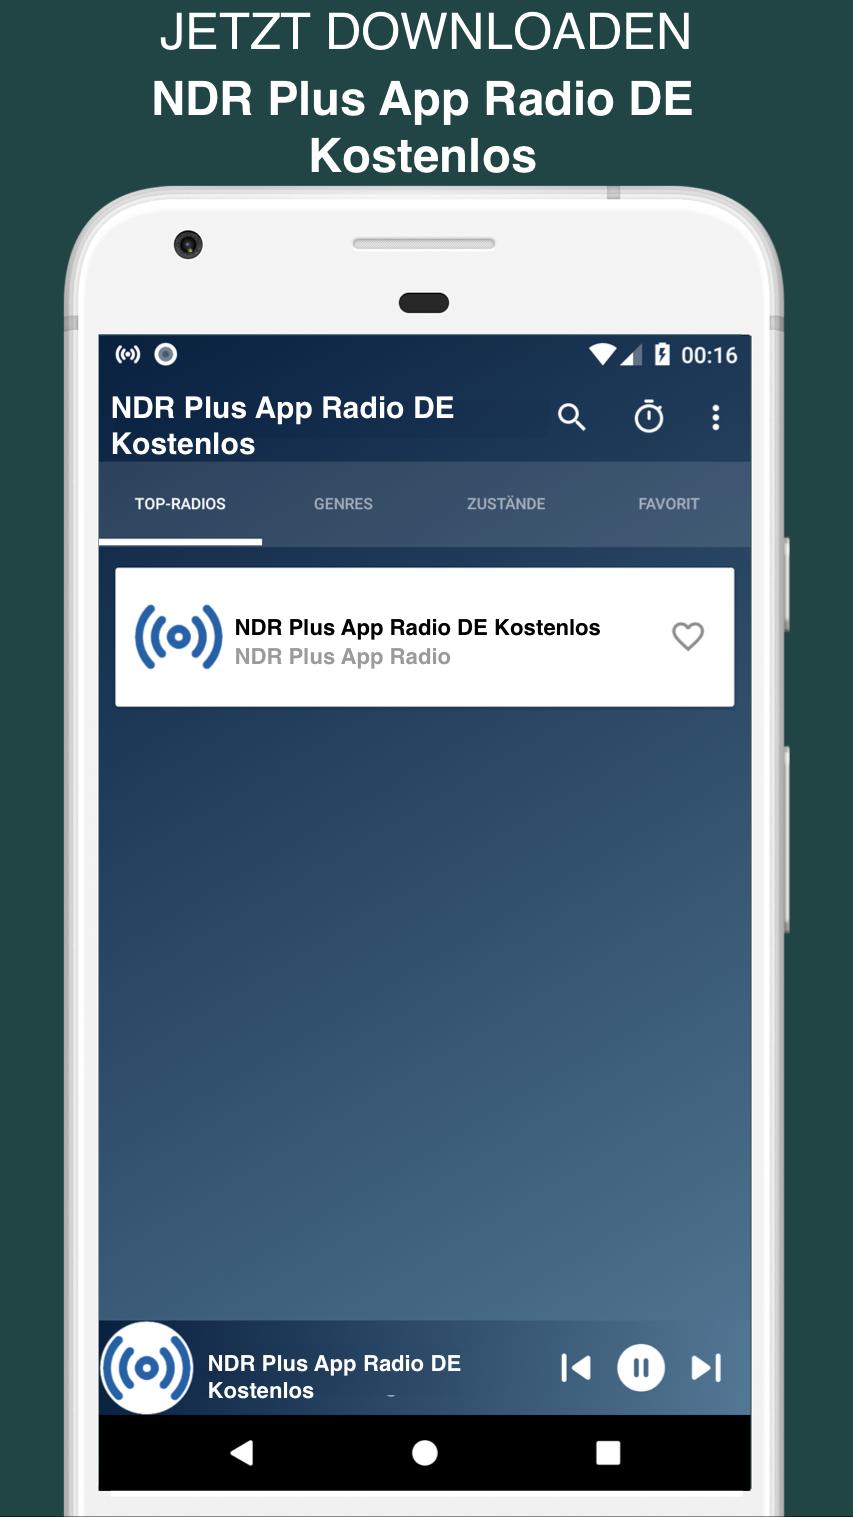 NDR Plus App Radio DE Kostenlos for Android - APK Download